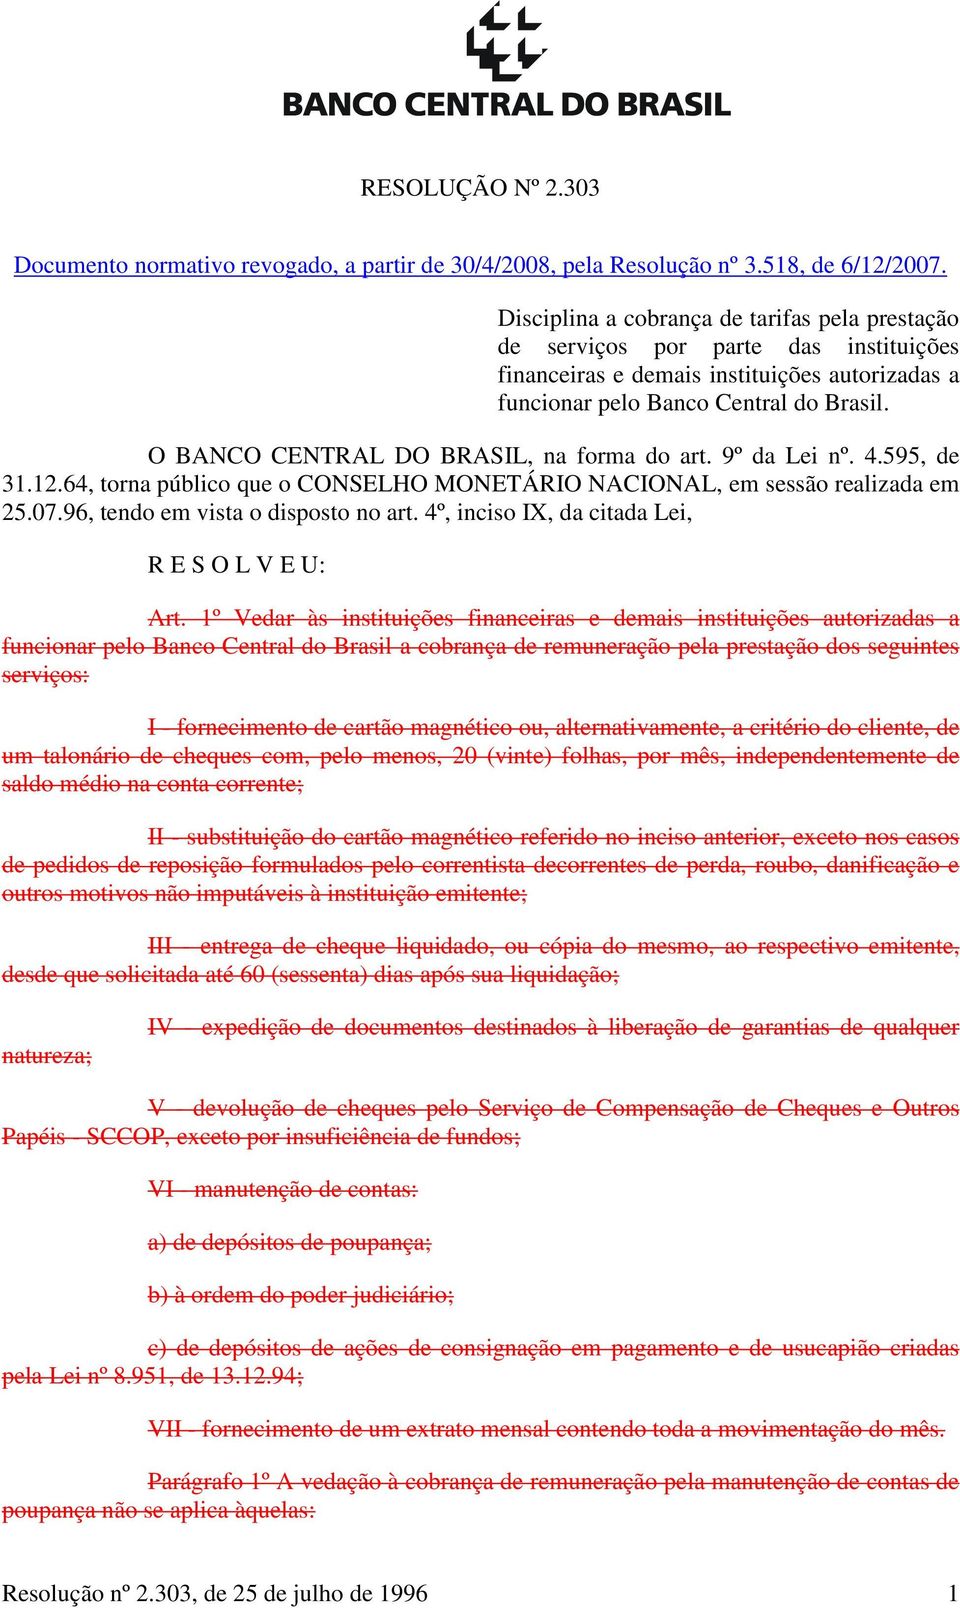 O BANCO CENTRAL DO BRASIL, na forma do art. 9º da Lei nº. 4.595, de 31.12.64, torna público que o CONSELHO MONETÁRIO NACIONAL, em sessão realizada em 25.07.96, tendo em vista o disposto no art.